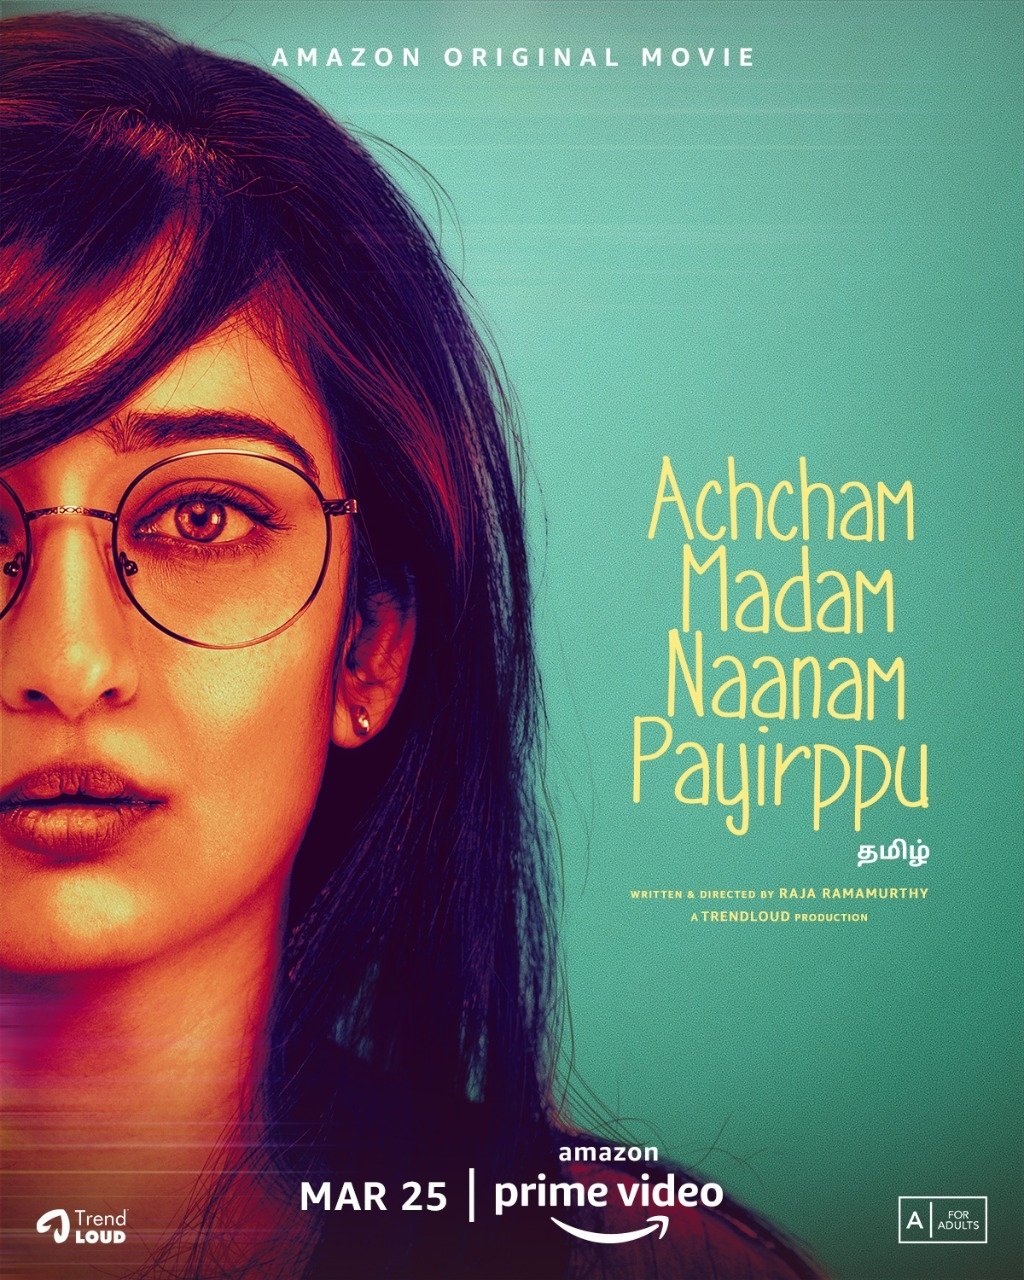 Achcham Madam Naanam Payirppu (2020) постер